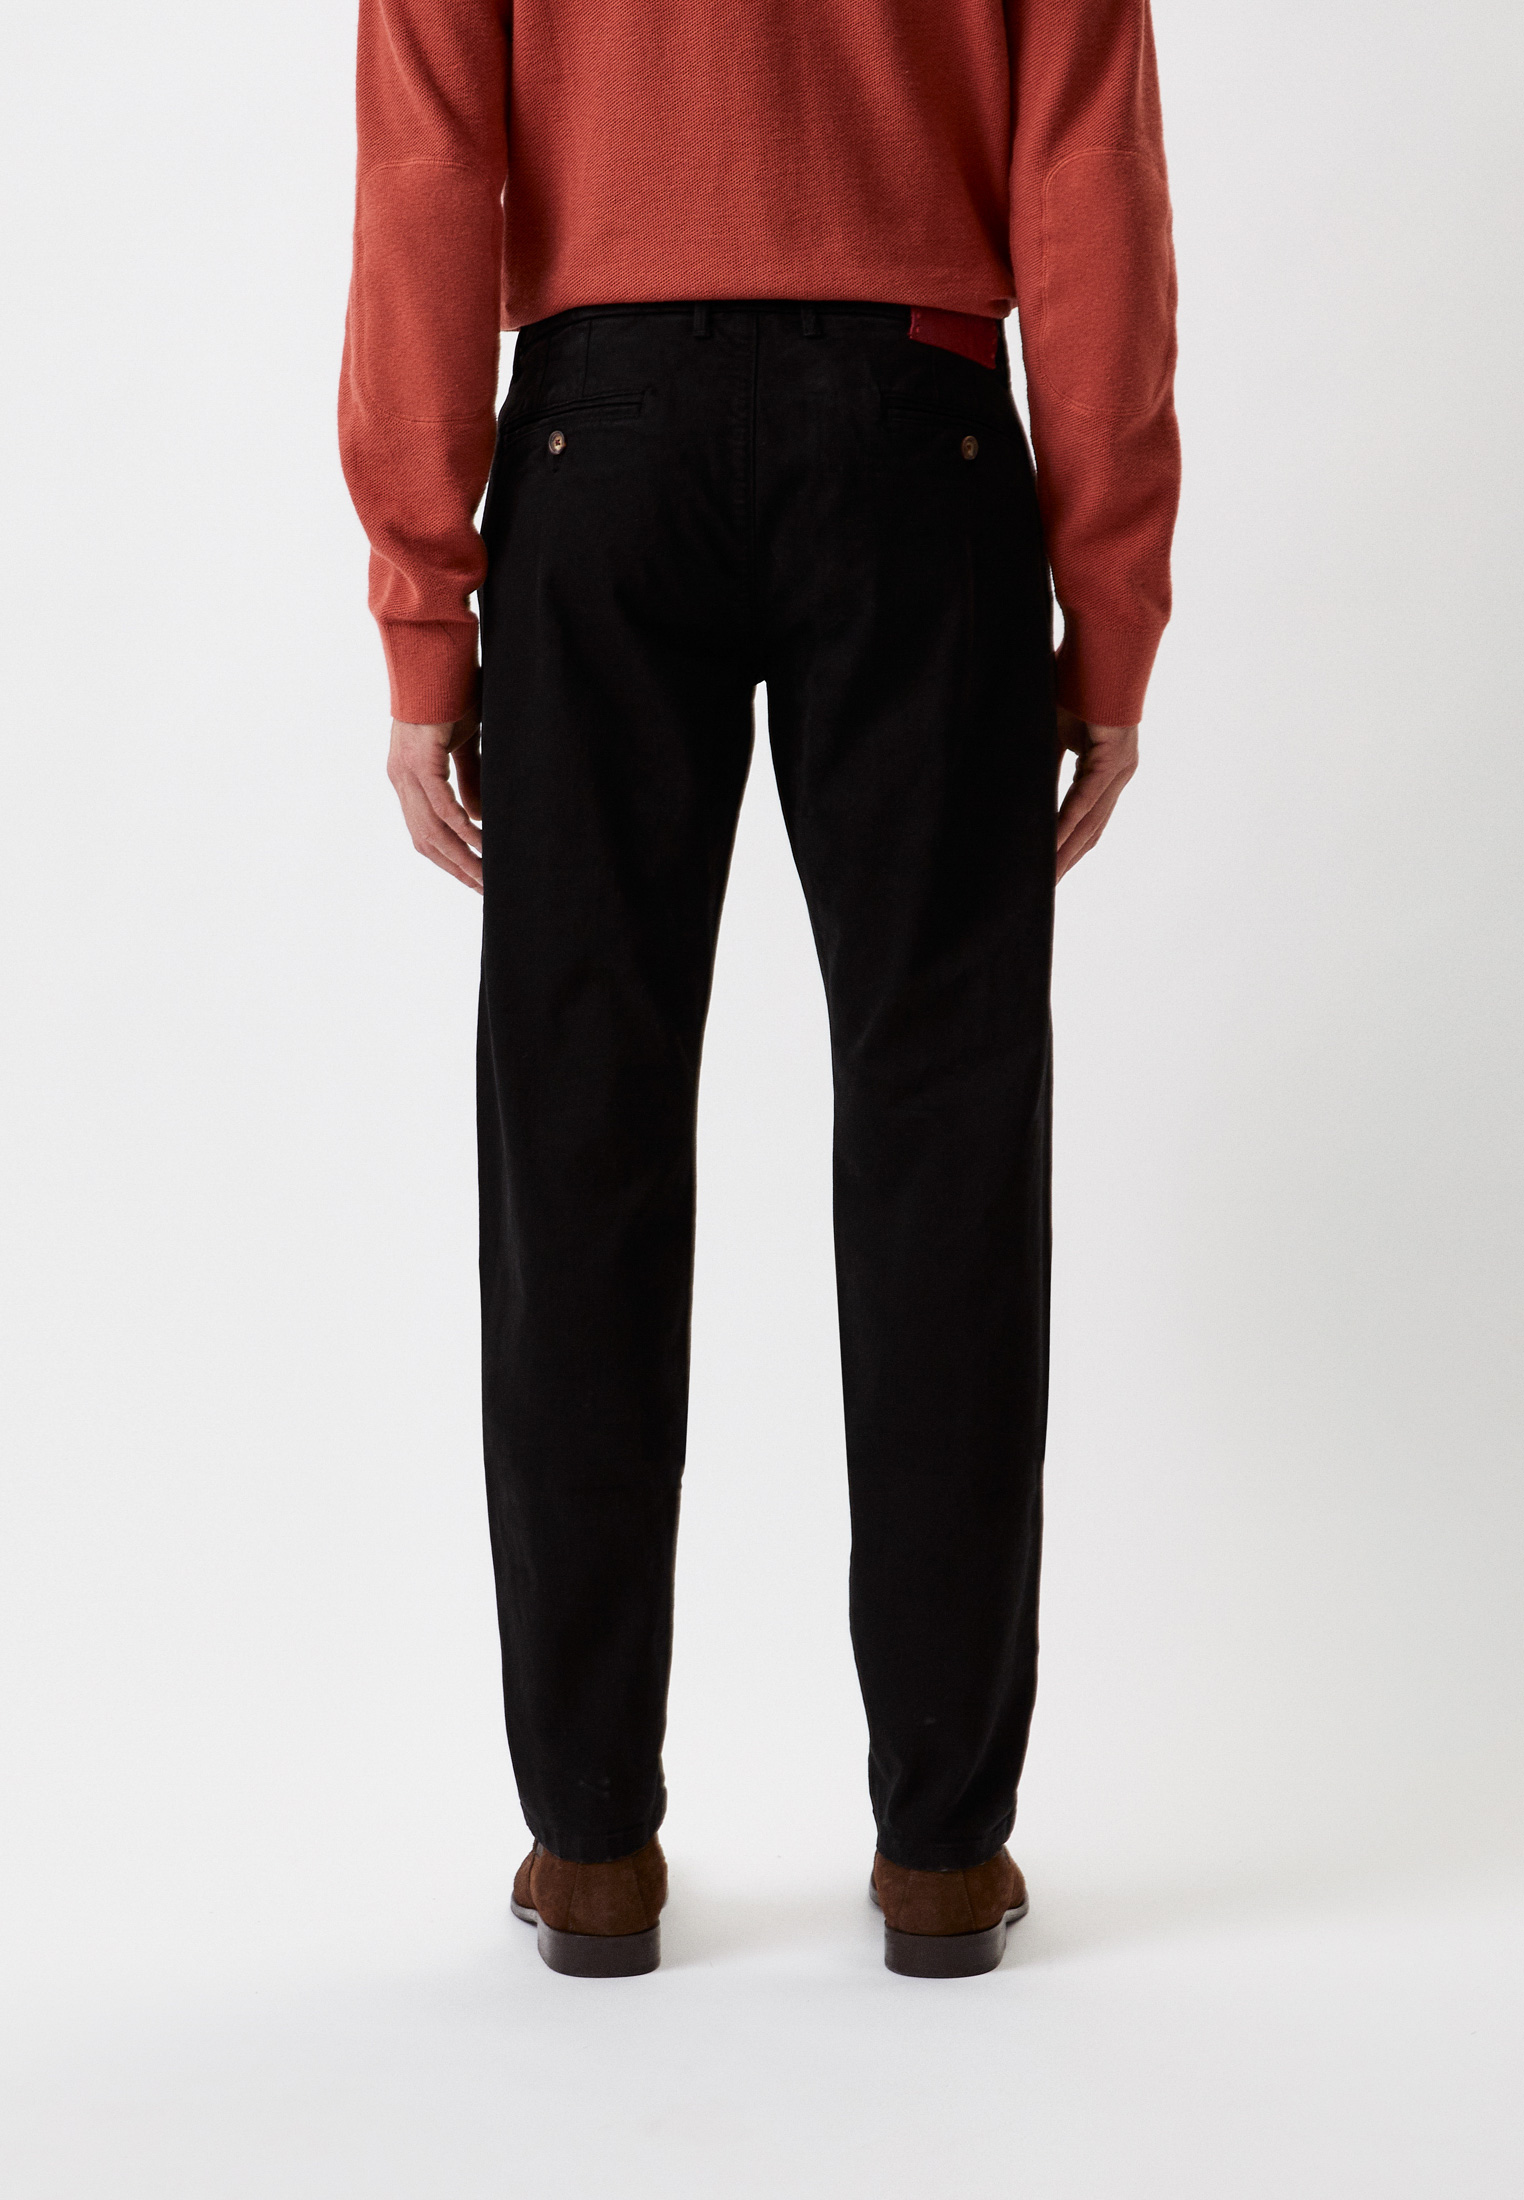 Мужские повседневные брюки Baldinini (Балдинини) M10: изображение 3